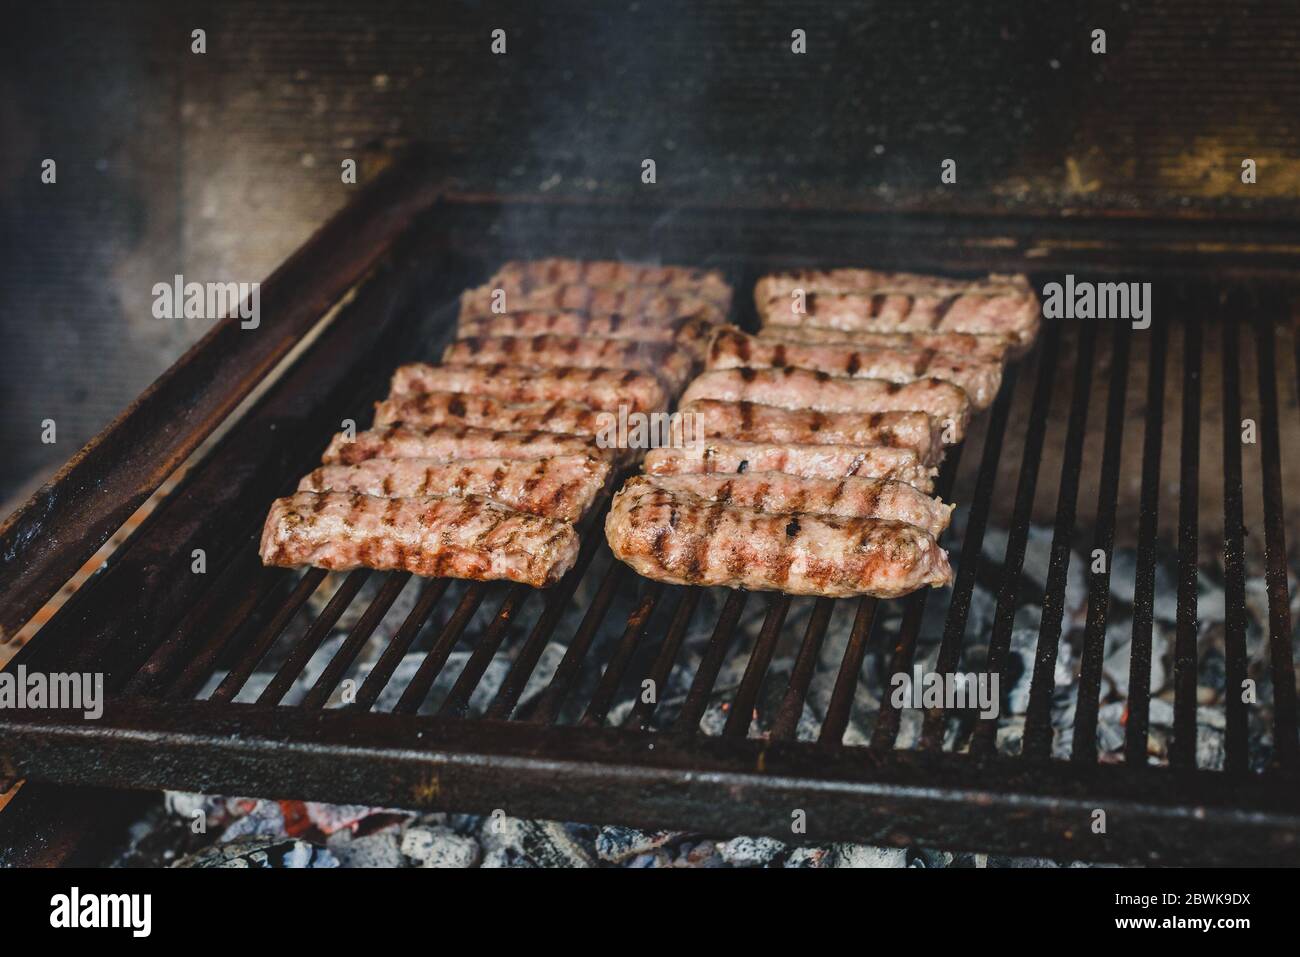 Grillen von Fleisch auf dem Grill mit heißer Kohle. Vorbereitung, Kochen Cevapcici, Kebabs, Country-Wurst auf Holzkohle Grill Grill im Freien Kamin. Tr Stockfoto